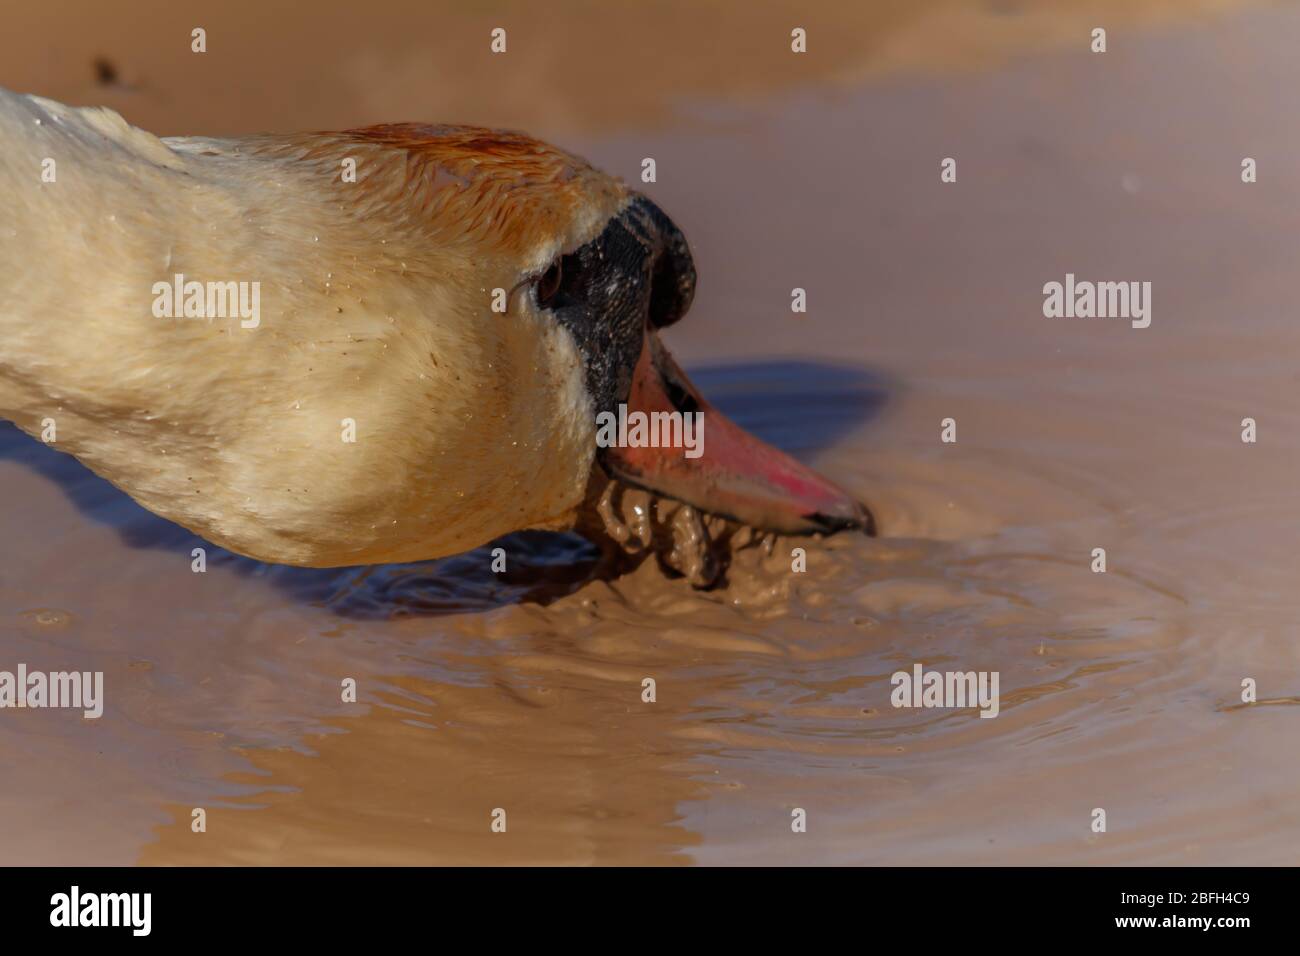 Swan drinking muddy water Stock Photo